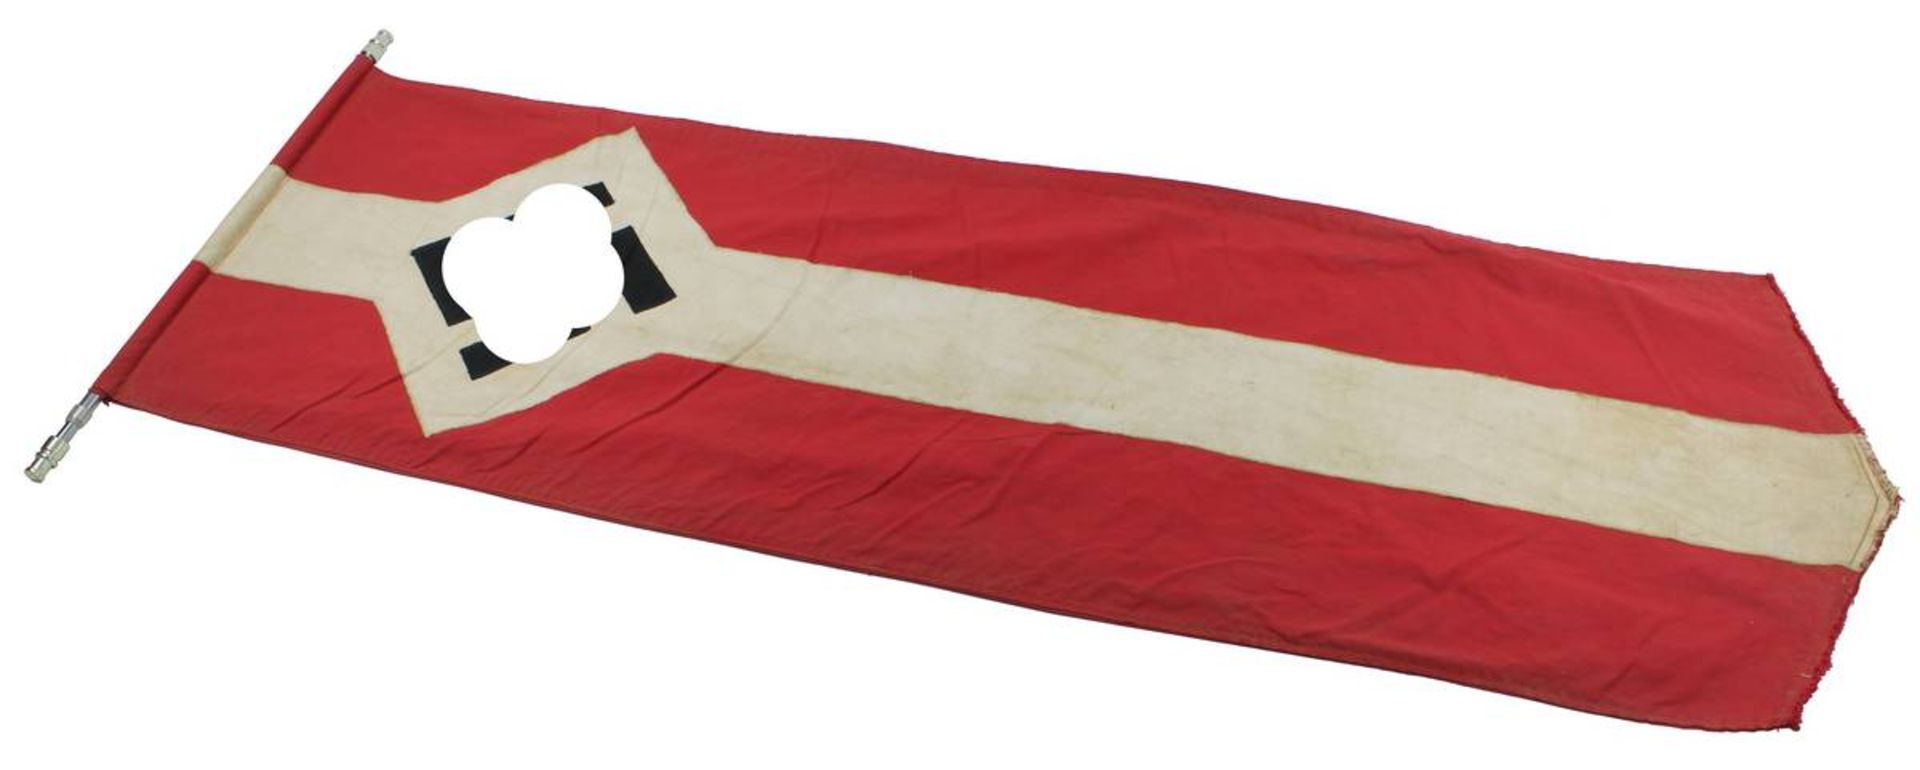 Fahne Deutsches Reich 1933 - 1945, wohl Hitlerjugend, rotweiß mit Hakenkreuz, L: 122 cm, B: 40 cm,